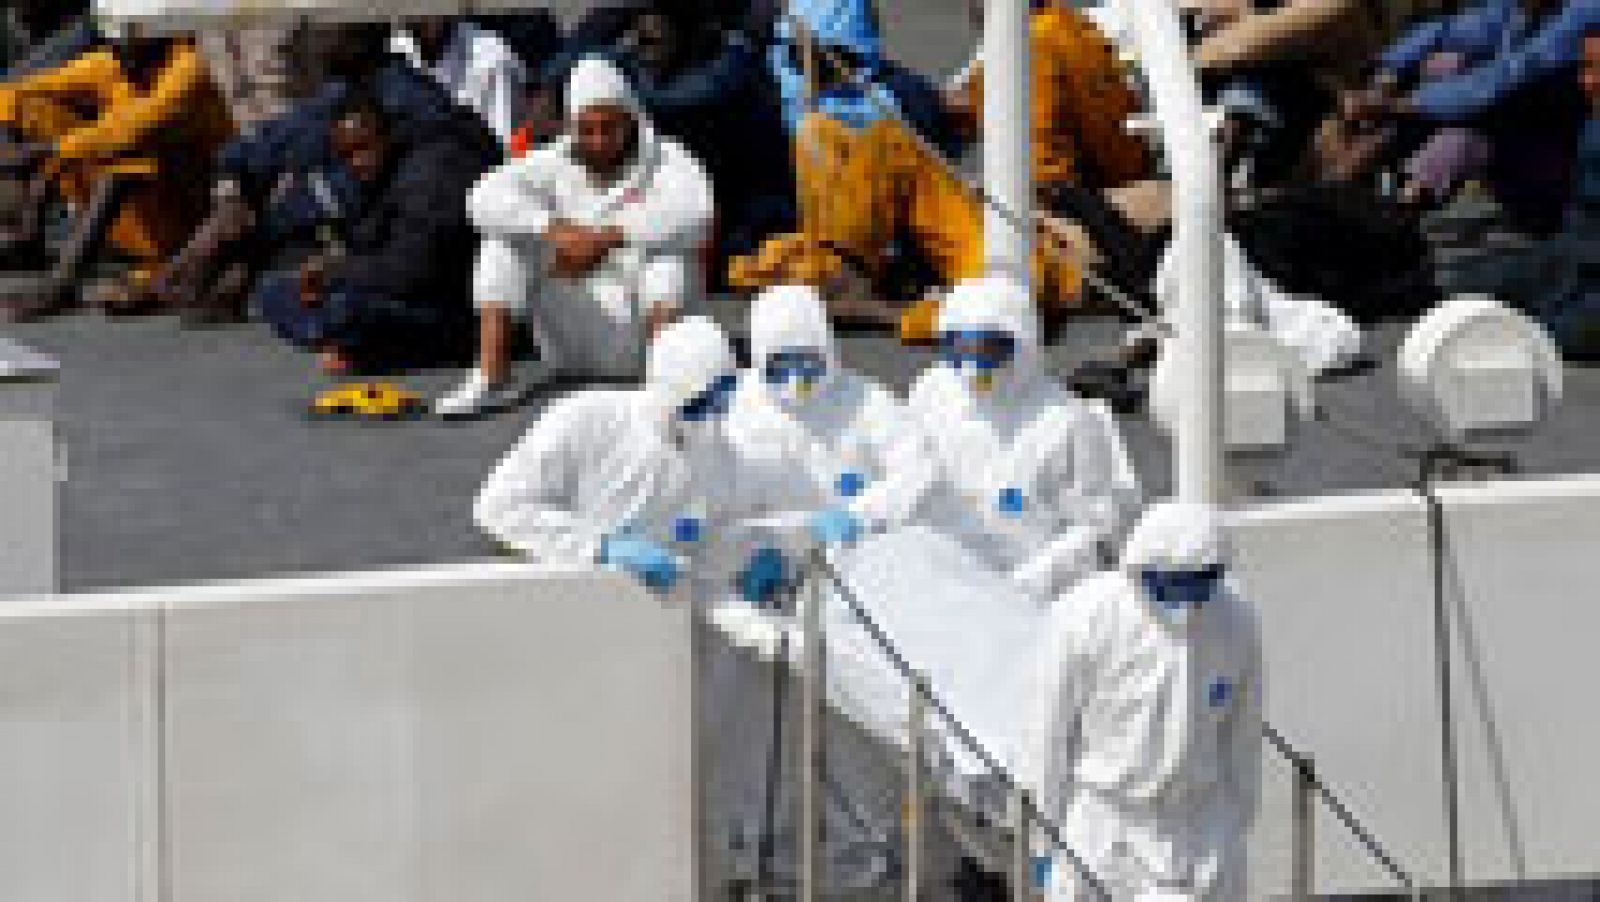 Llegan a Malta los cadáveres de 24 inmigrantes mientras se siguen buscando supervivientes